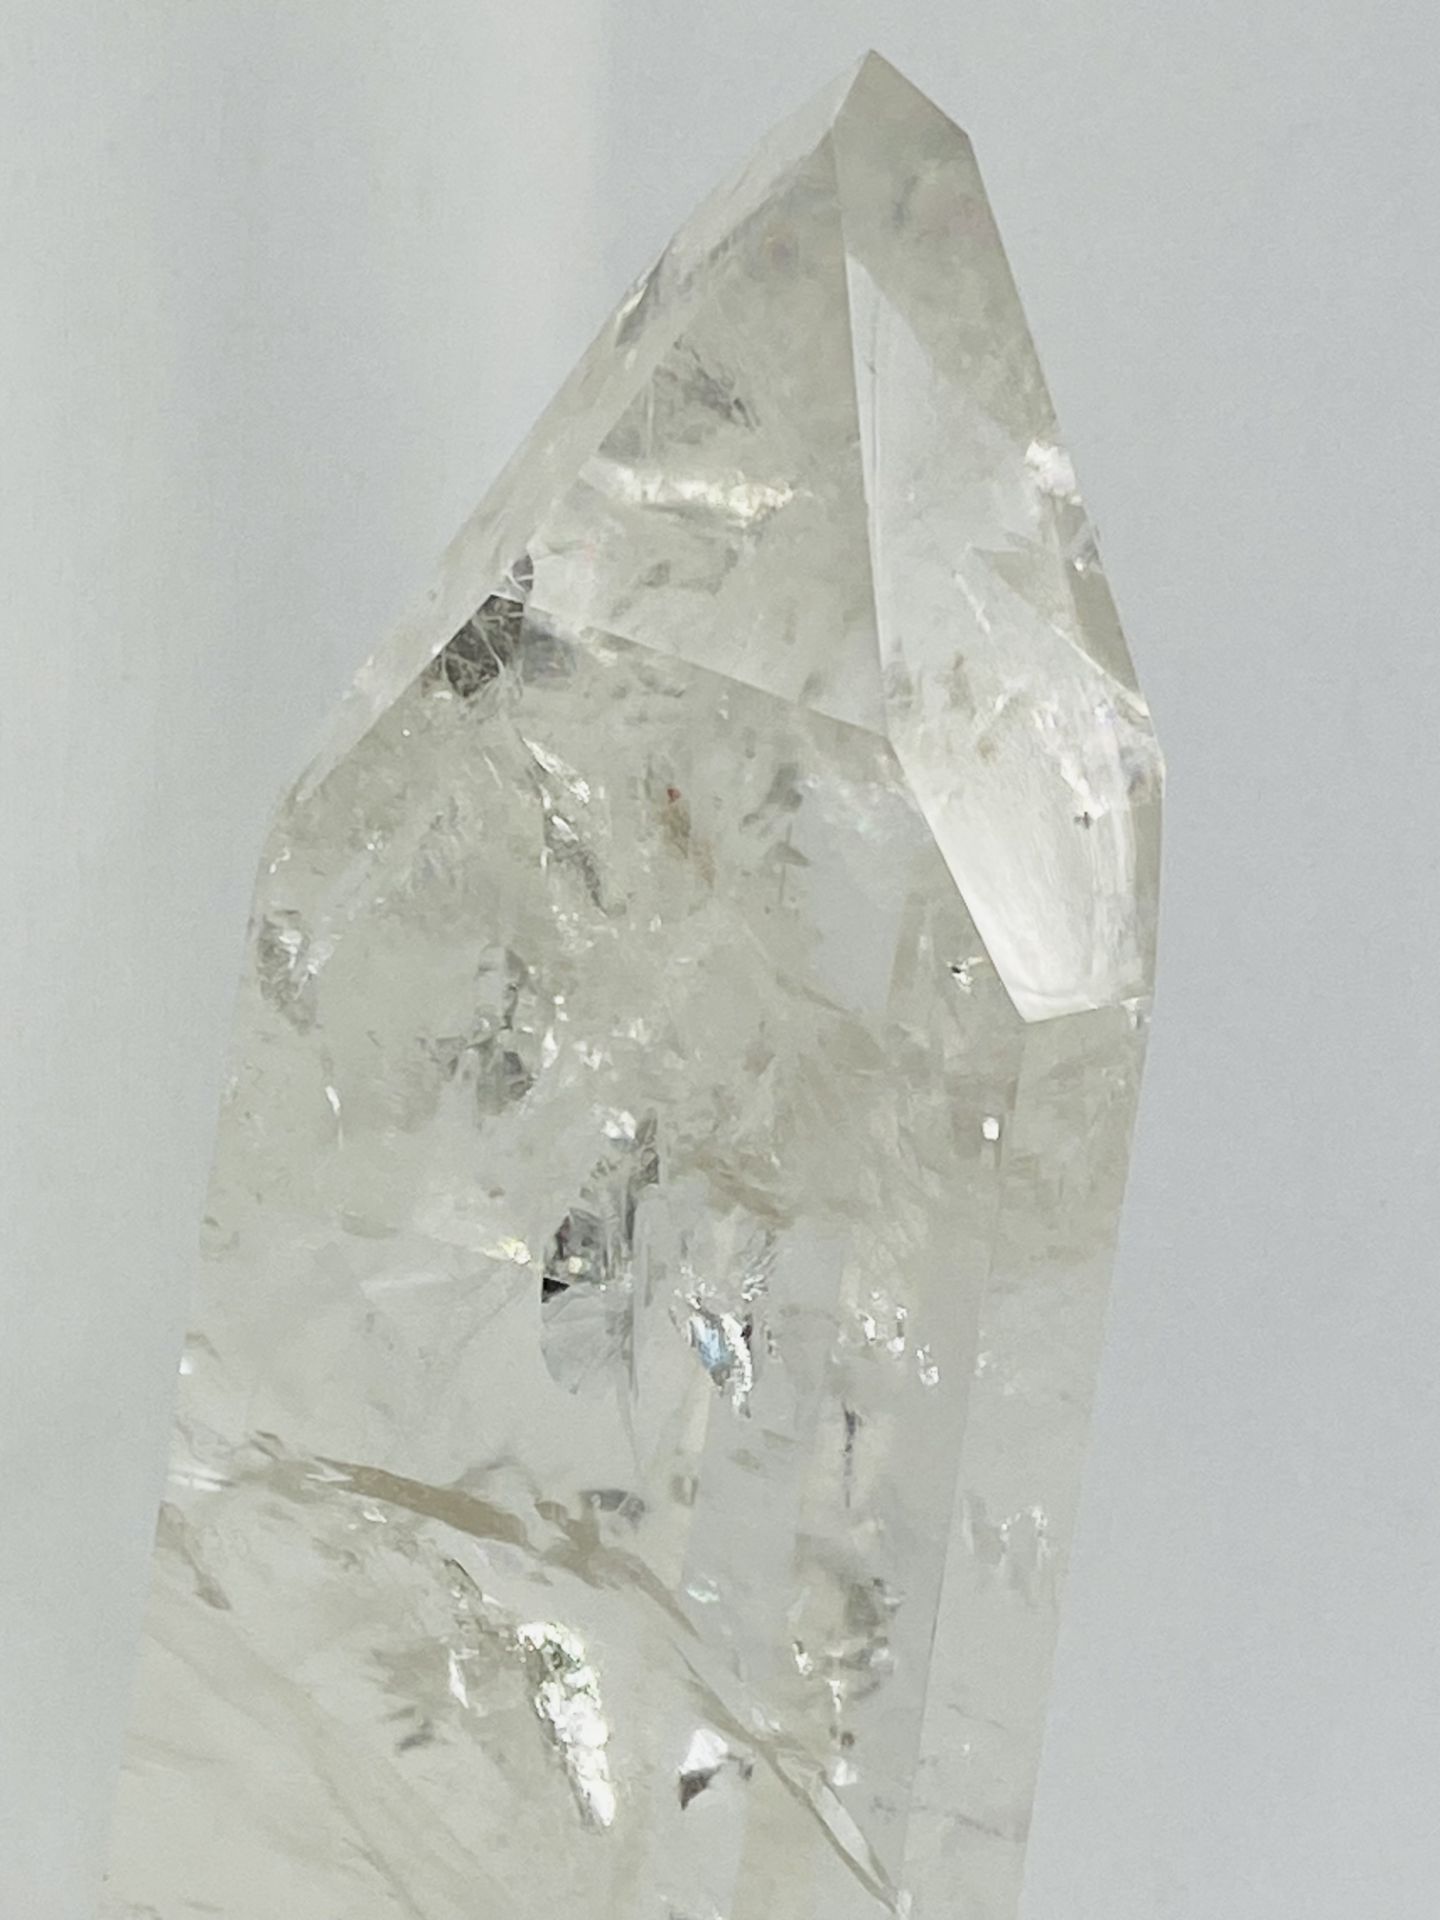 Polished rock crystal mounted in metal base - Bild 6 aus 6